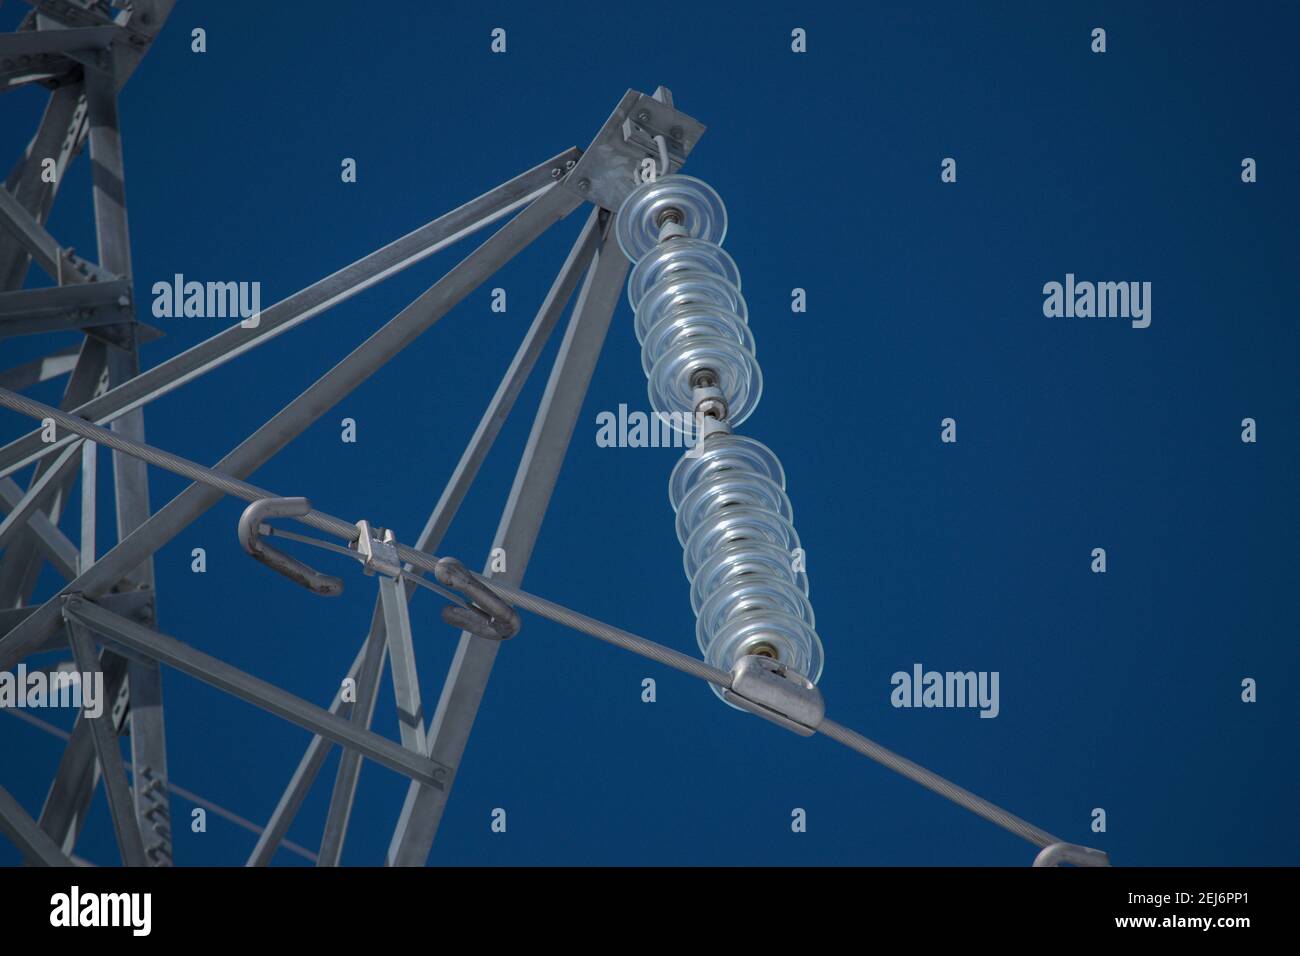 Tour de transmission - gros plan de l'isolateur de suspension modulaire et de l'amortisseur Stockbridge contre un ciel bleu. Ottawa, Ontario, Canada. Banque D'Images